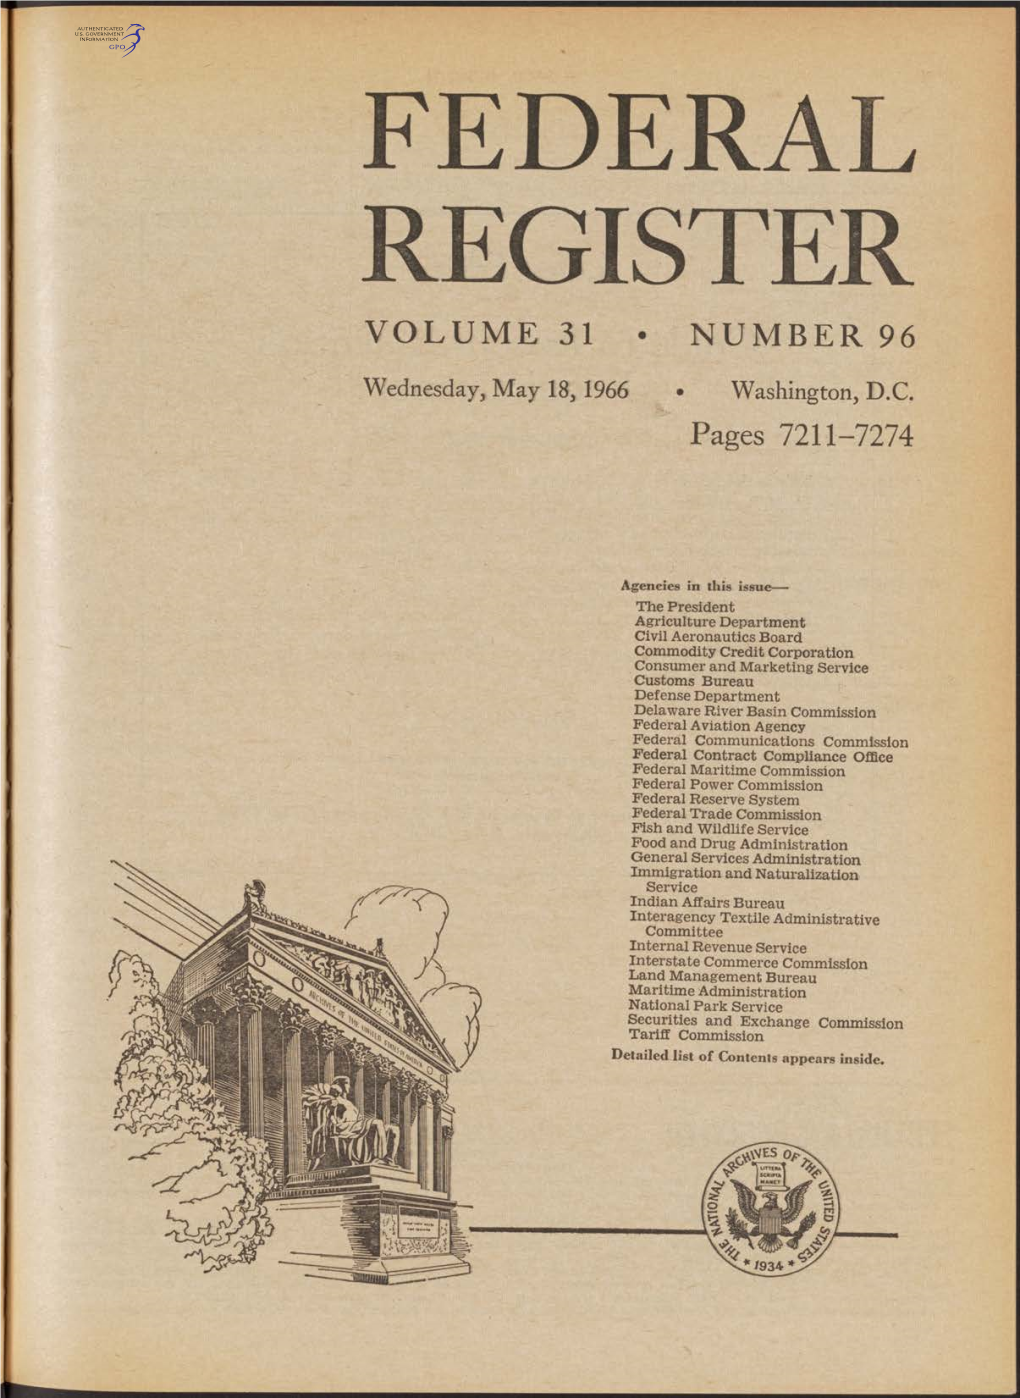 Federal Register Volume 31 • Number 96